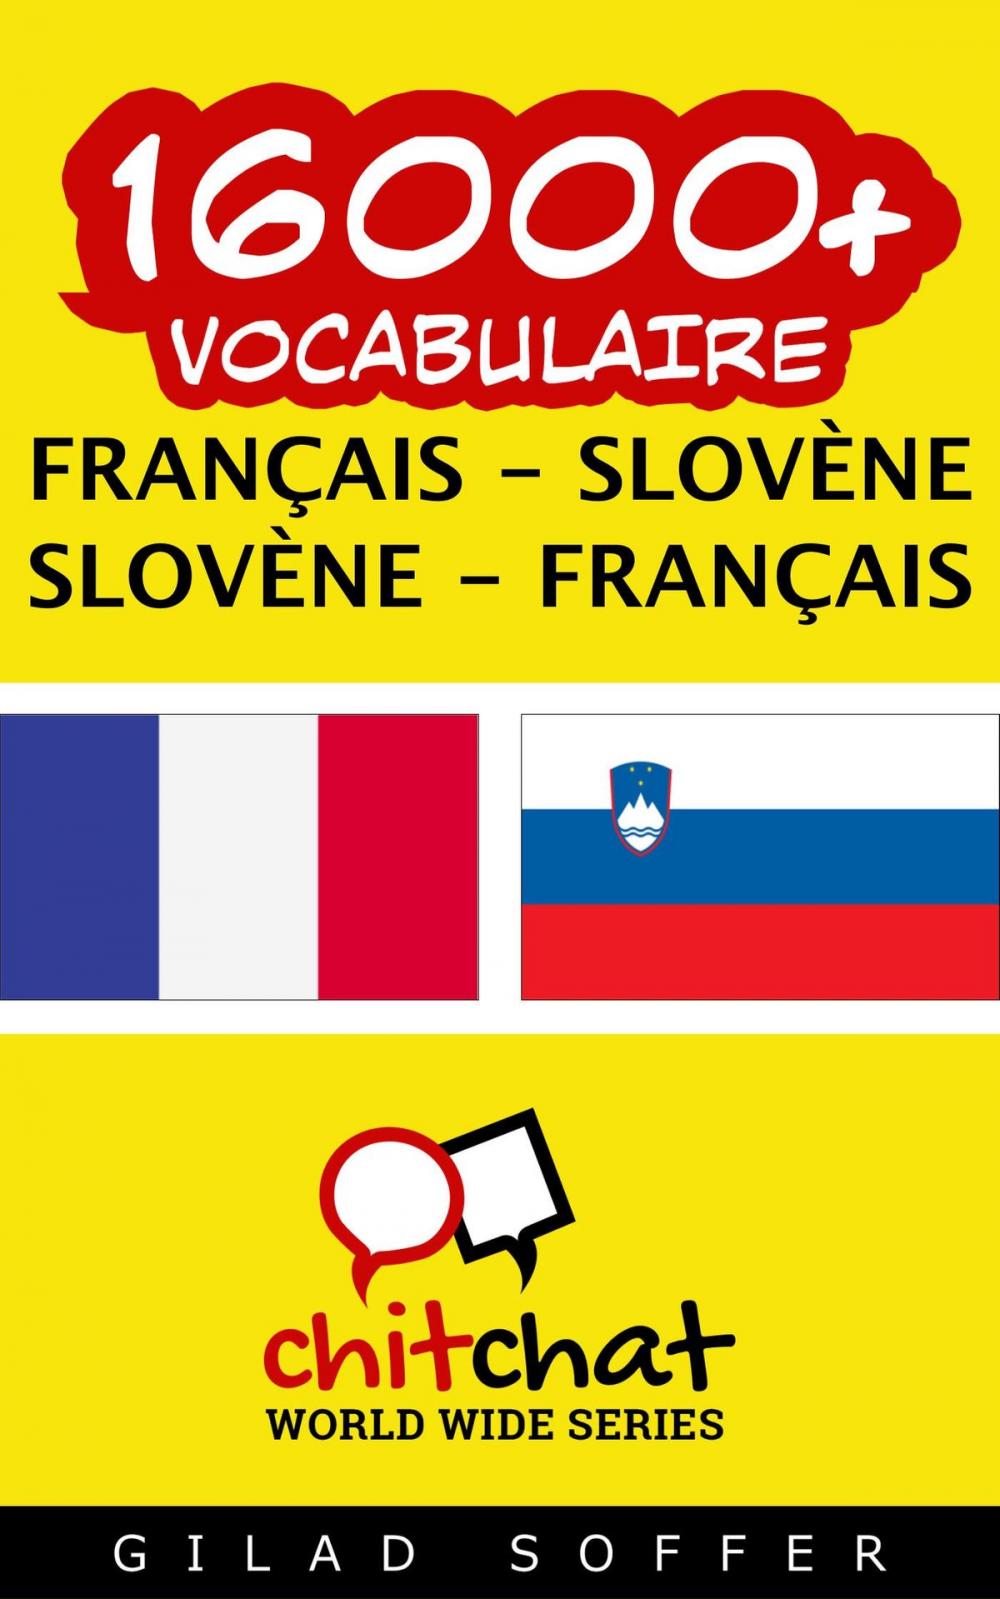 Big bigCover of 16000+ vocabulaire Français - Slovène